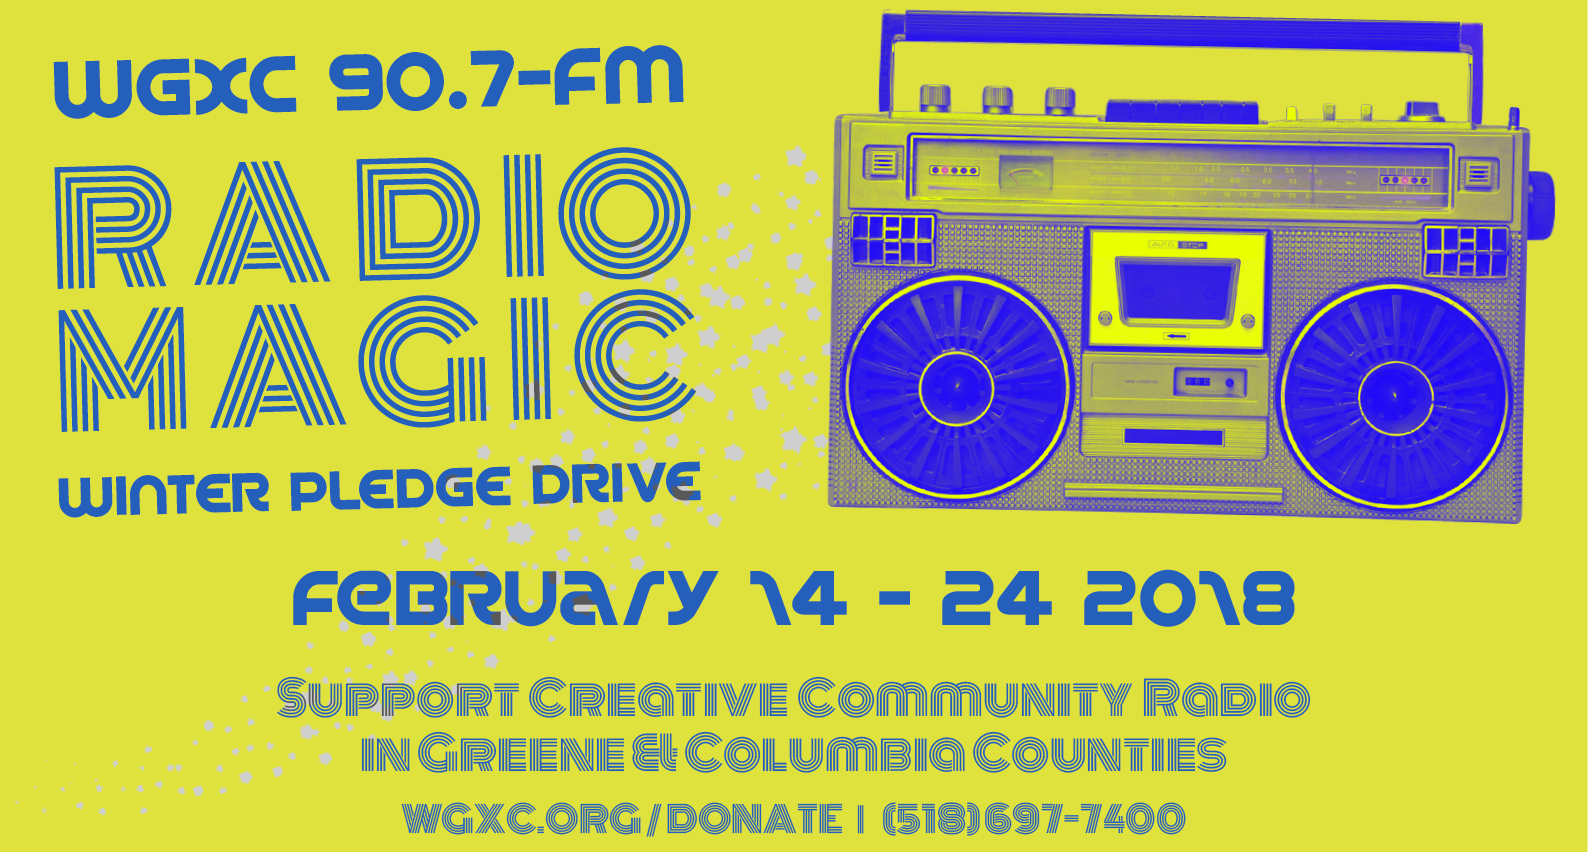 Radio Magic Pledge Drive image. 